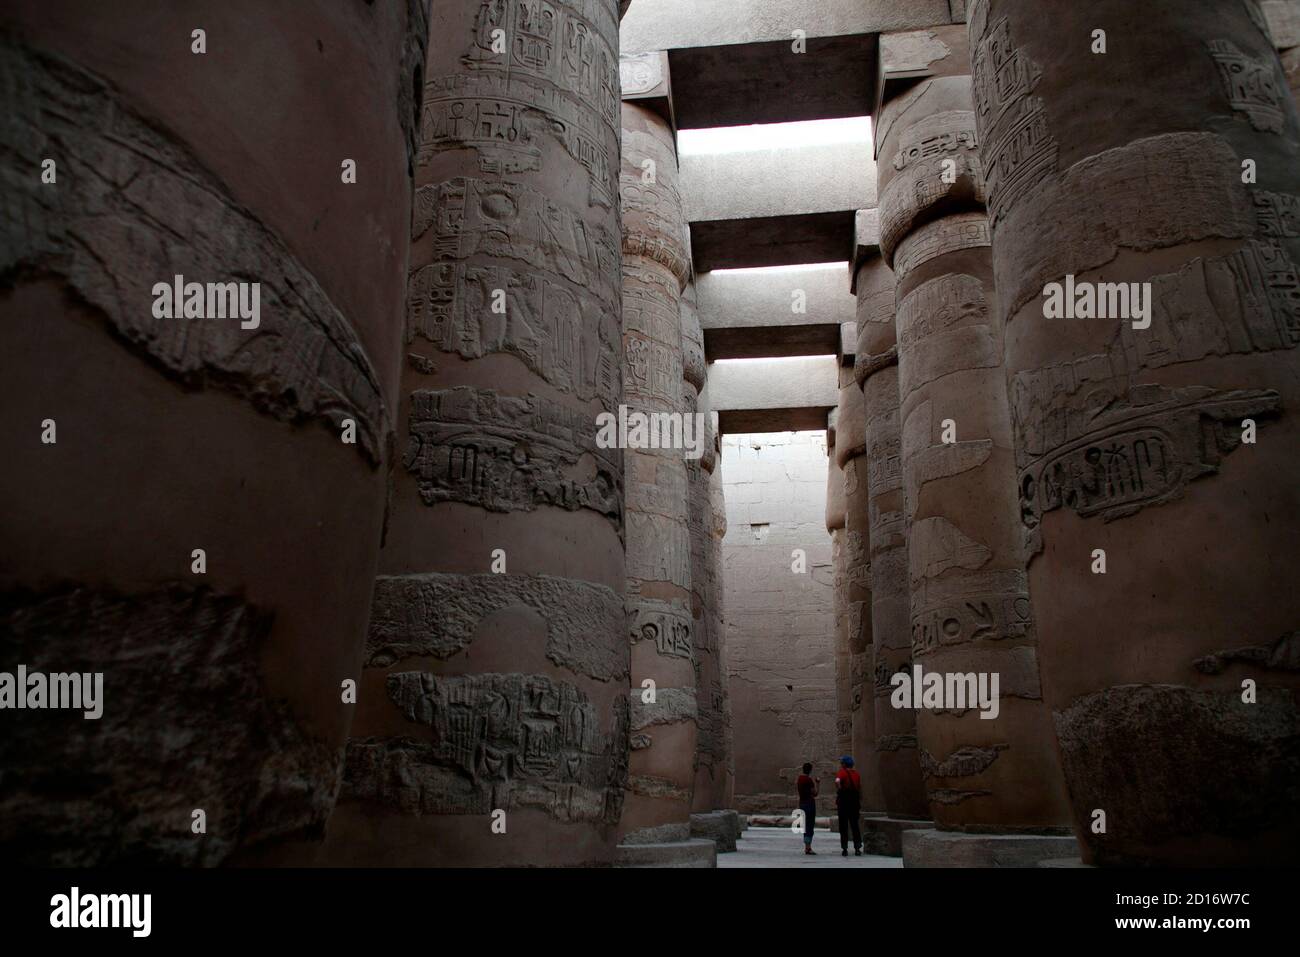 Los turistas caminan en el Templo de Karnak en Luxor, sur de Egipto, 9 de noviembre de 2009. El complejo del templo de Karnak data de antes del 2000 AC y está dedicado principalmente a Amon Ra. Es el templo más grande del mundo. REUTERS/Goran Tomasevic (VIAJE DE LA SOCIEDAD DE EGIPTO) Foto de stock